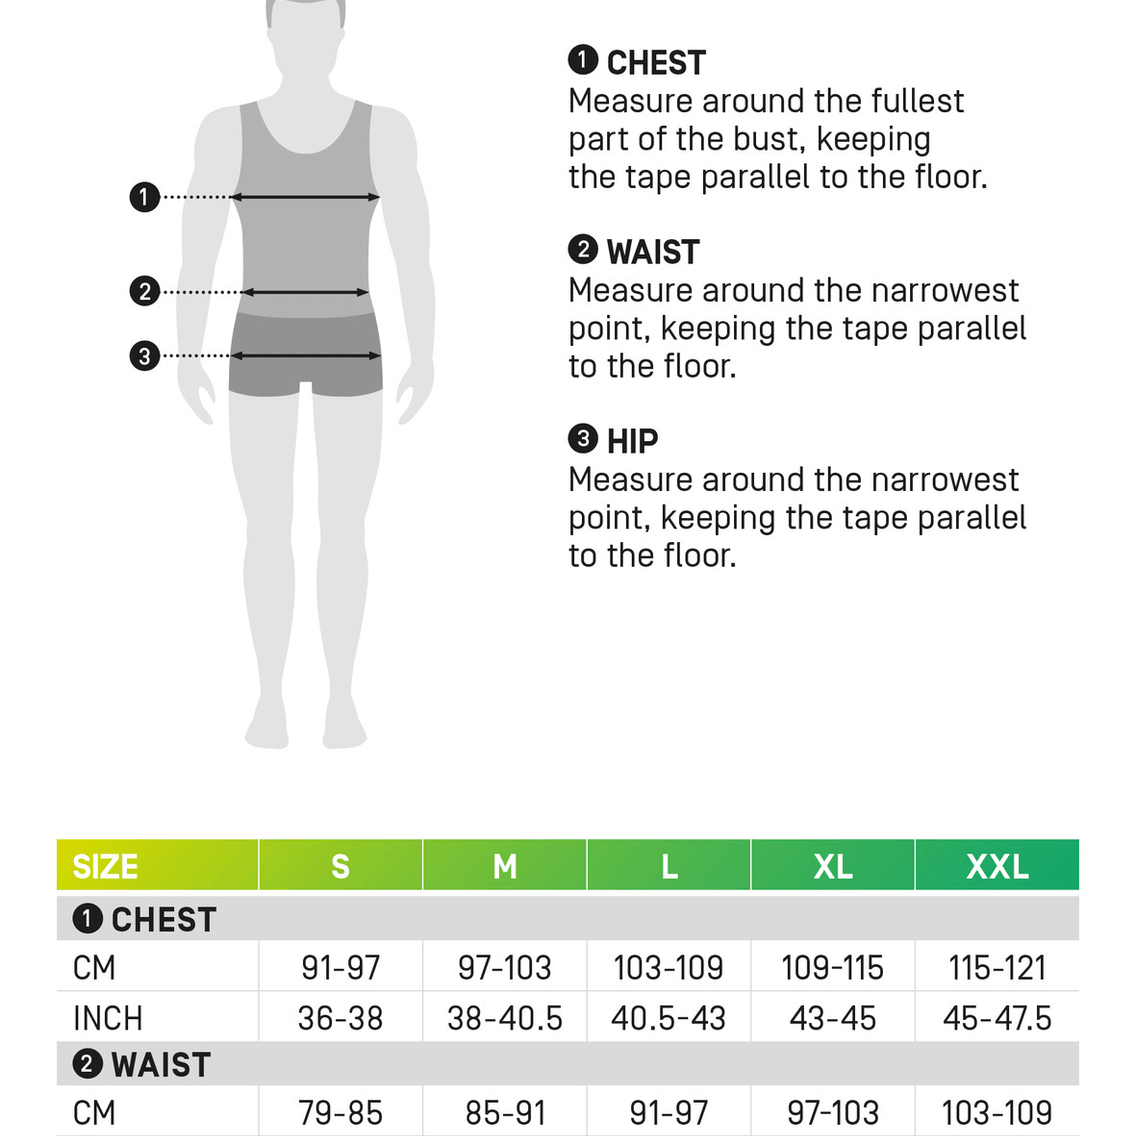 Men's Ultralight Long Sleeve Run Shirt